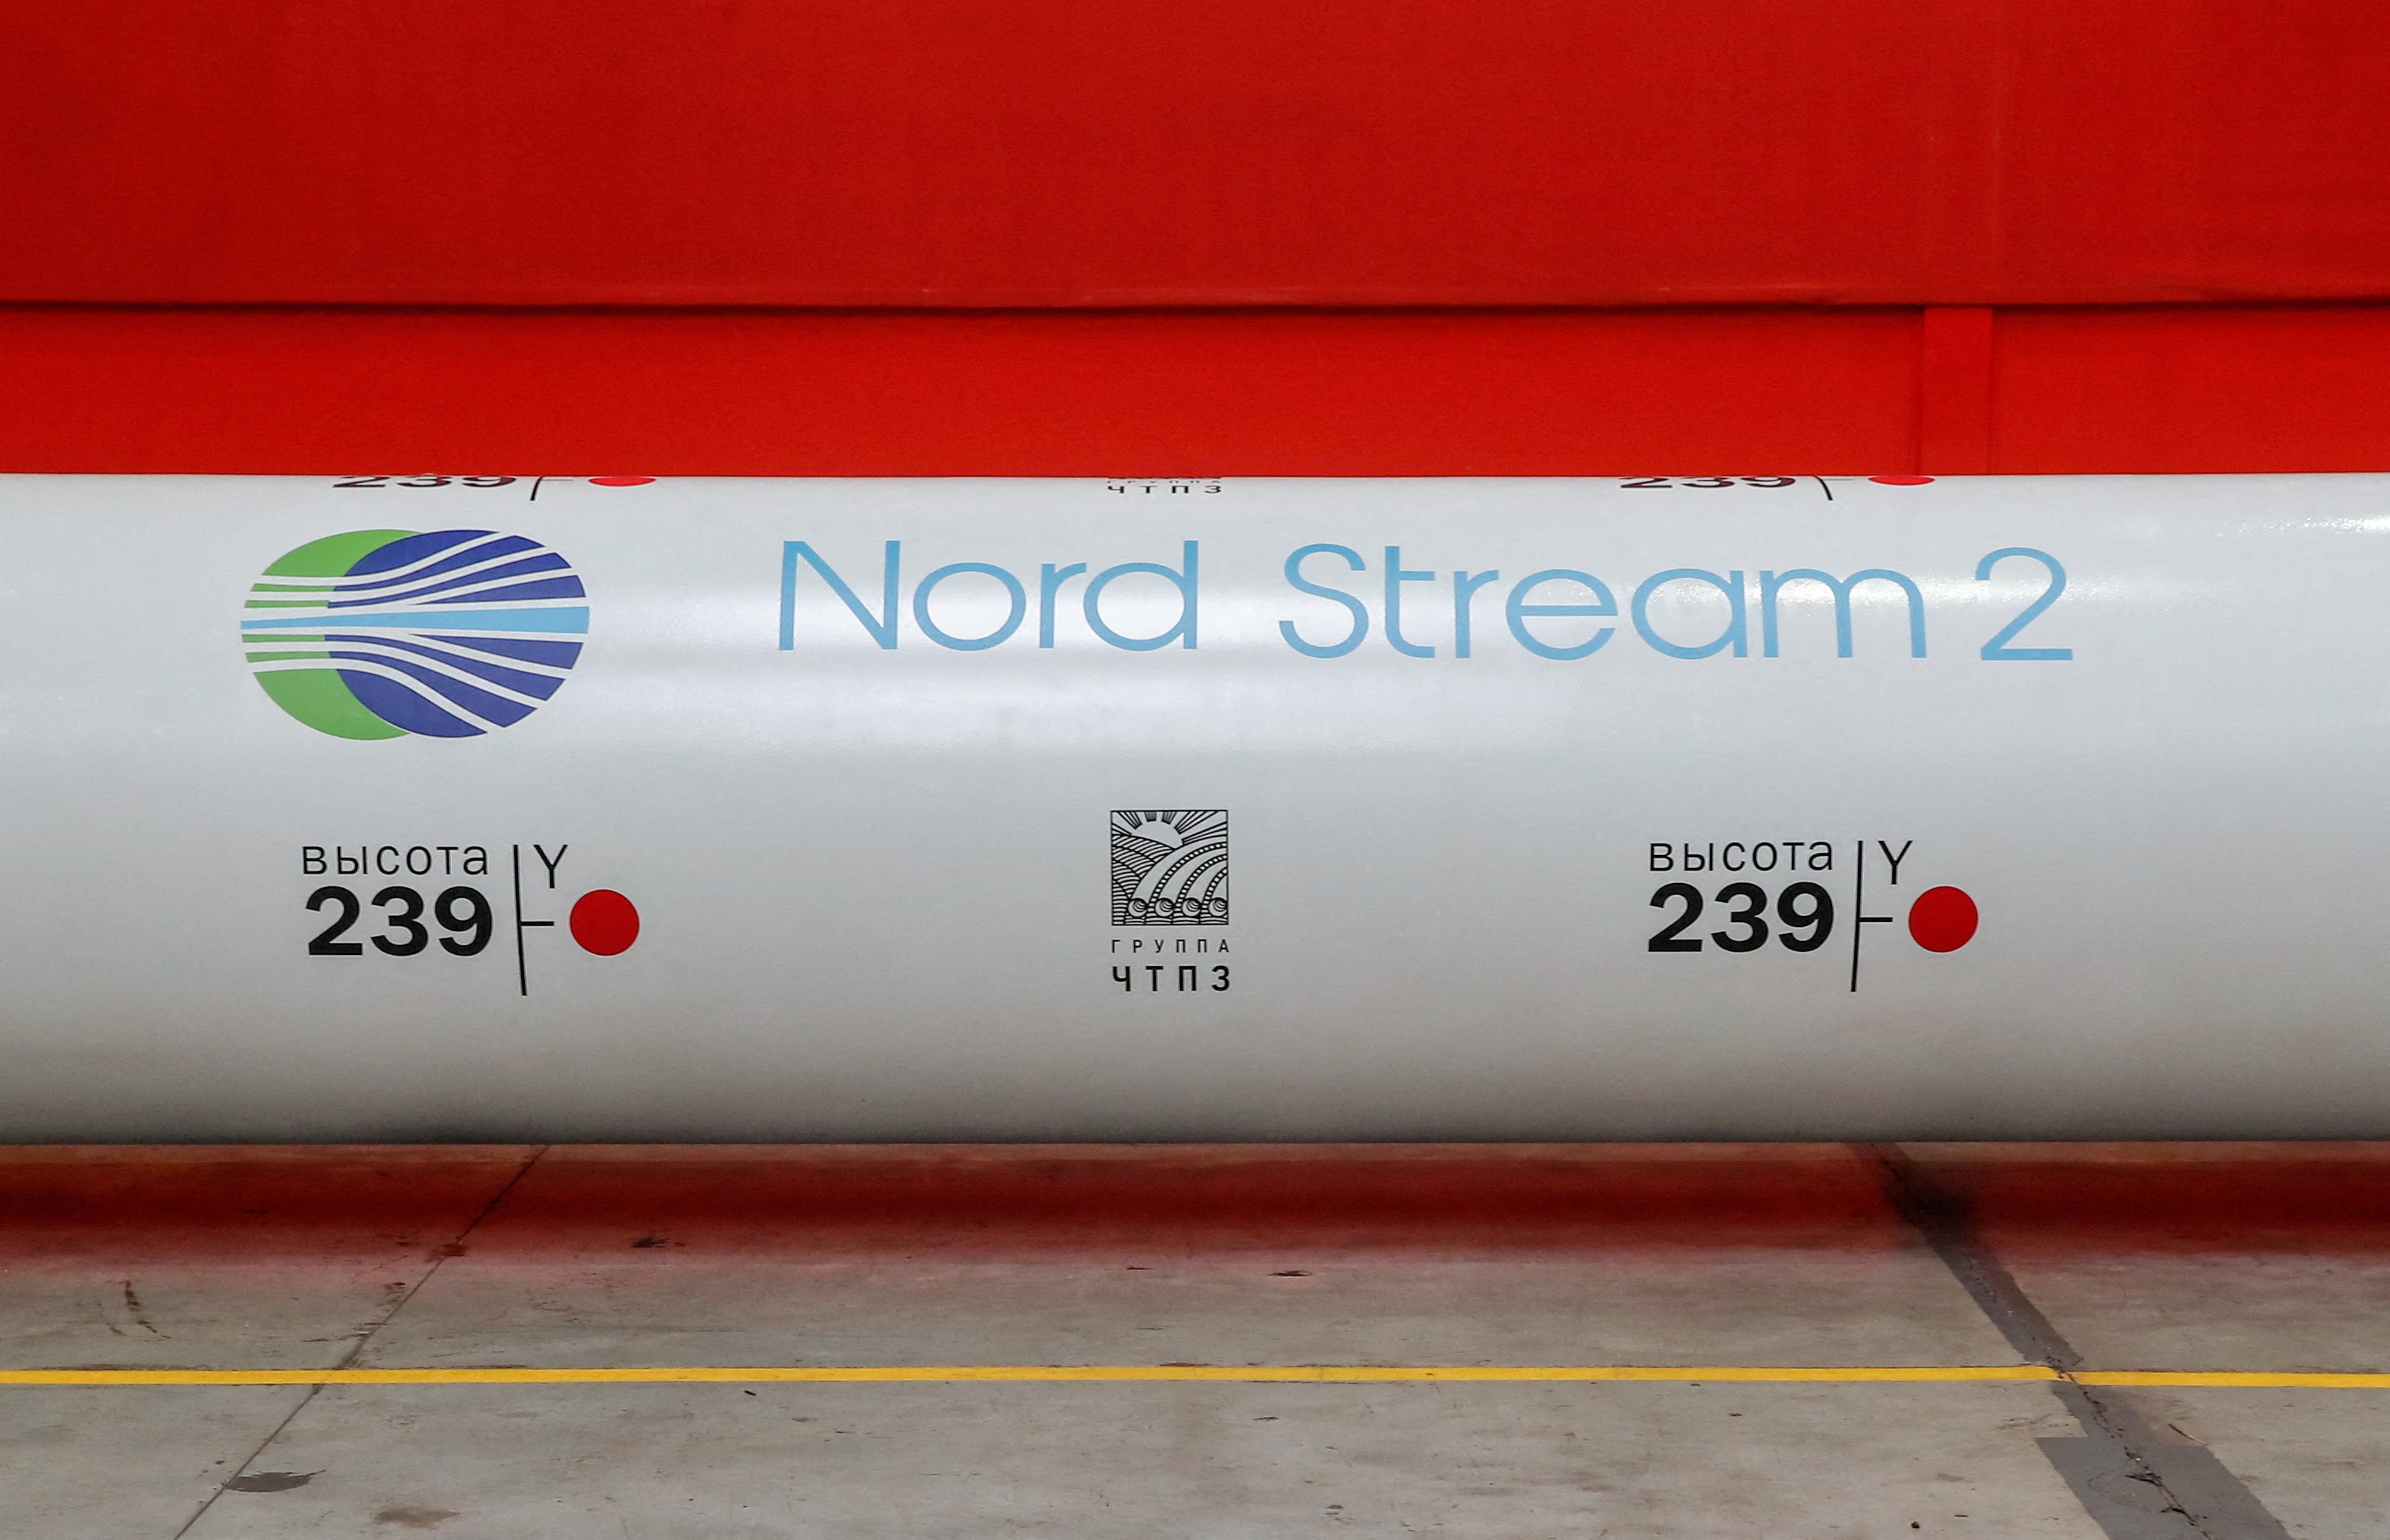 El logo del proyecto Nord Stream 2 en Chelyabinsk, Rusia (Foto: REUTERS/Maxim Shemetov)